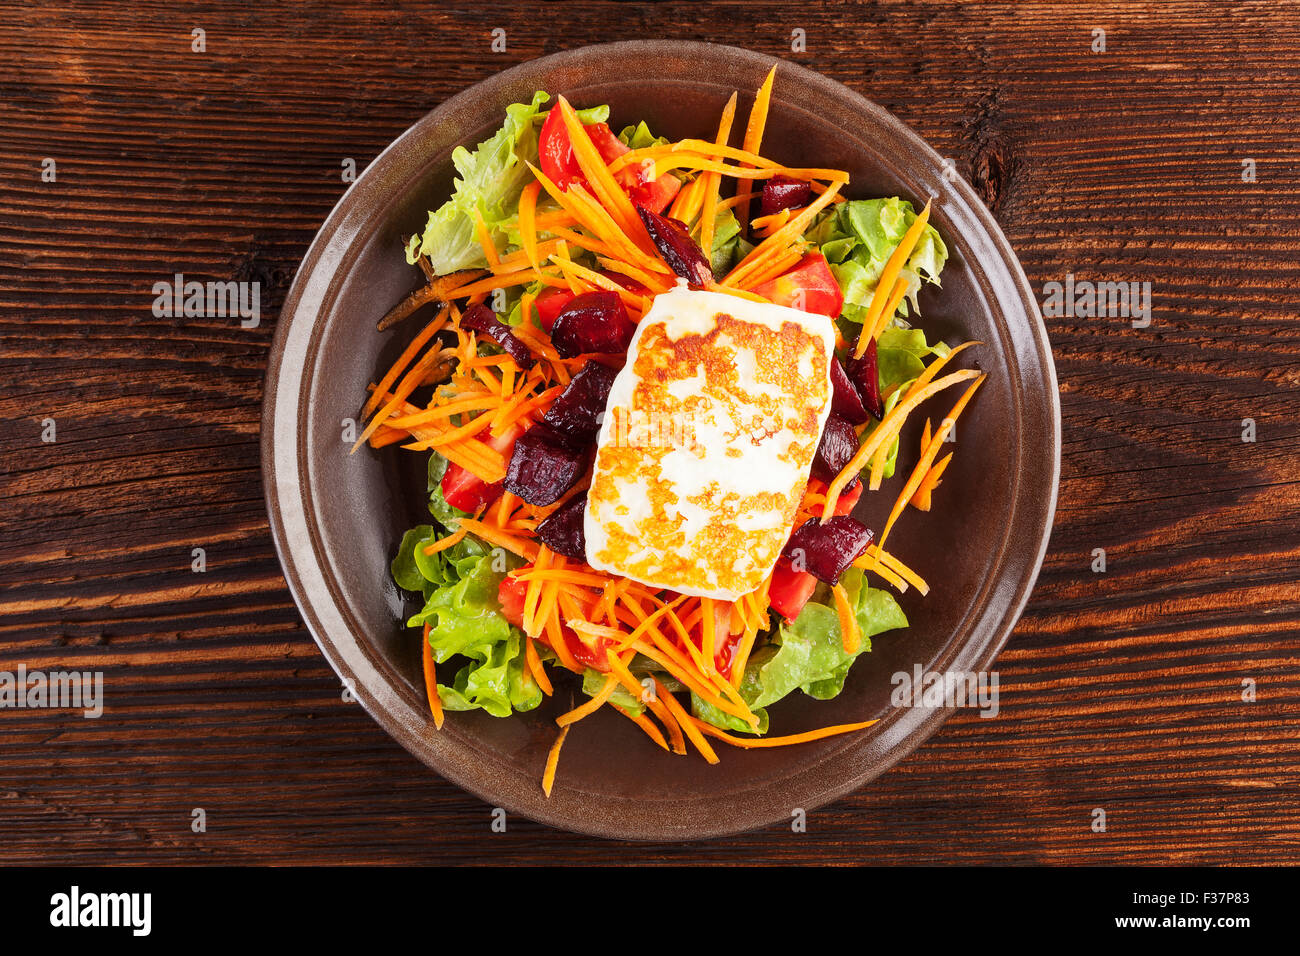 Grigliata di formaggio halloumi con colorati insalata fresca sulla piastra su un tavolo di legno, vista dall'alto. Prelibatezze deliziose mangiare vegetariano Foto Stock